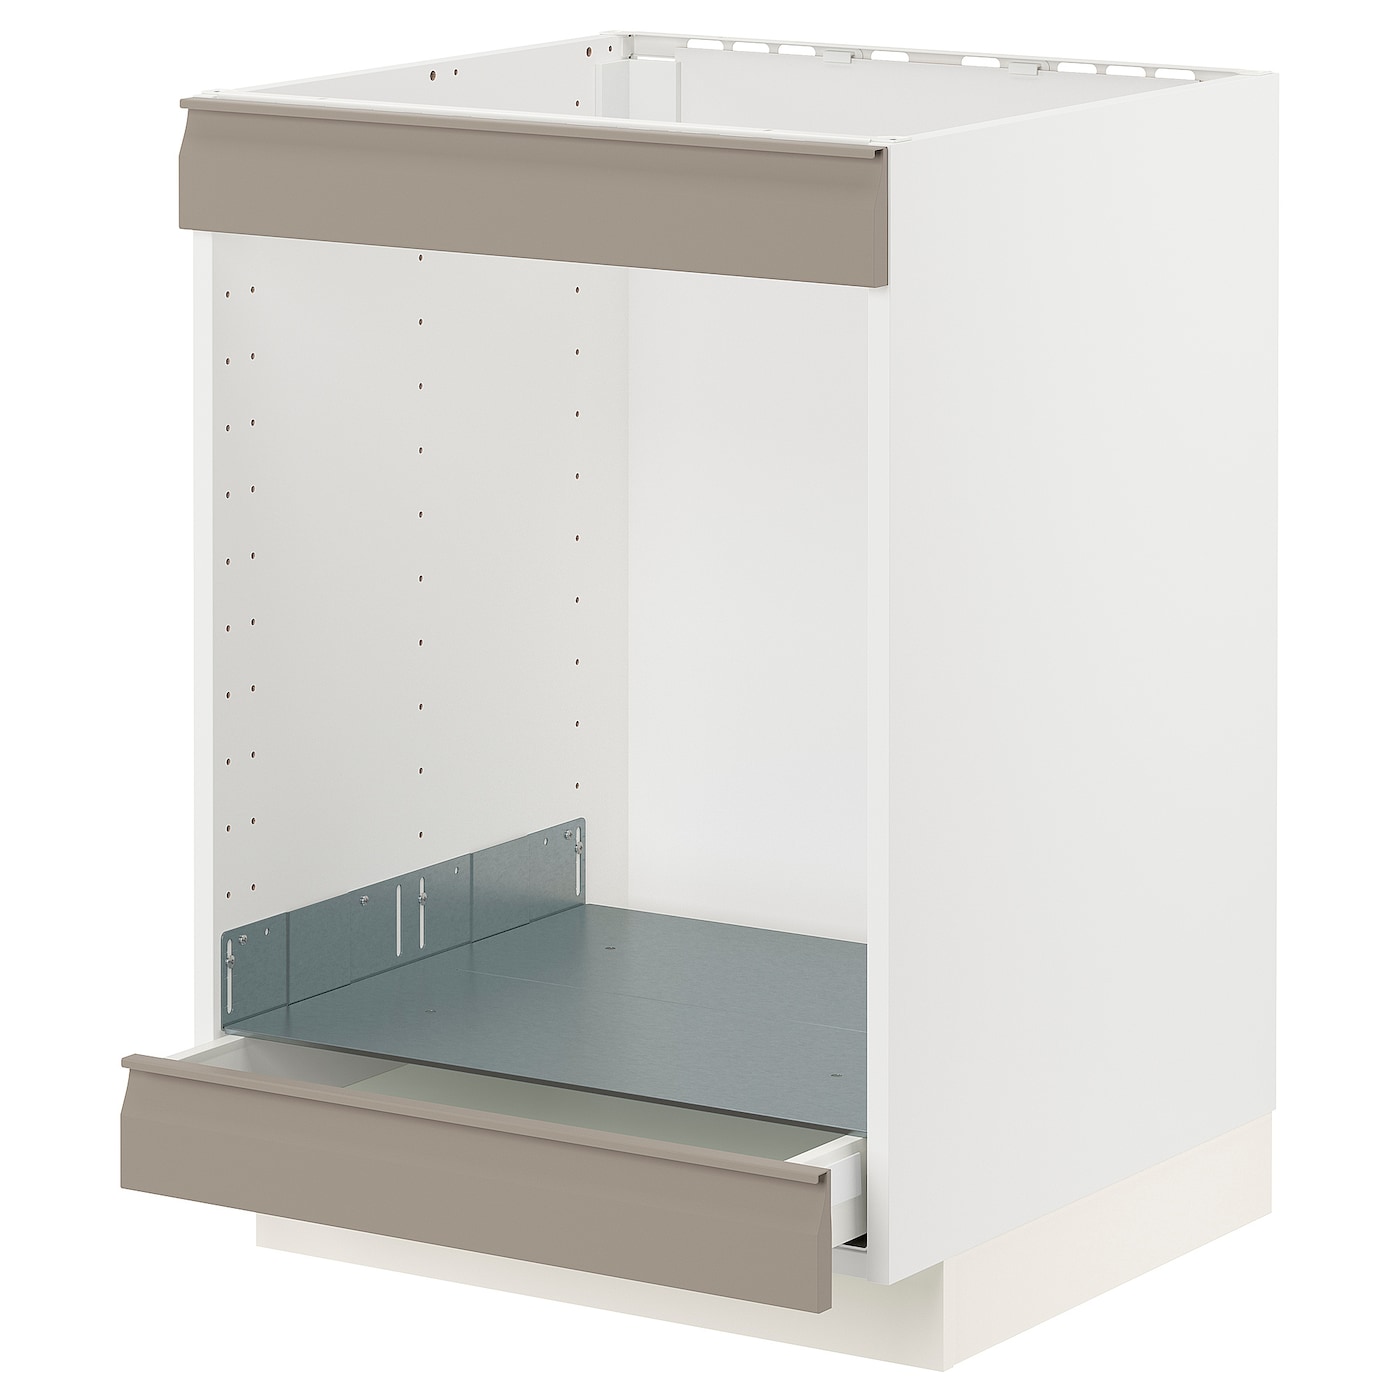 Каркас для плиты с ящиками - METOD / MAXIMERA IKEA/ МЕТОД / МАКСИМЕРА ИКЕА, 88х60 см, белый/бежевый